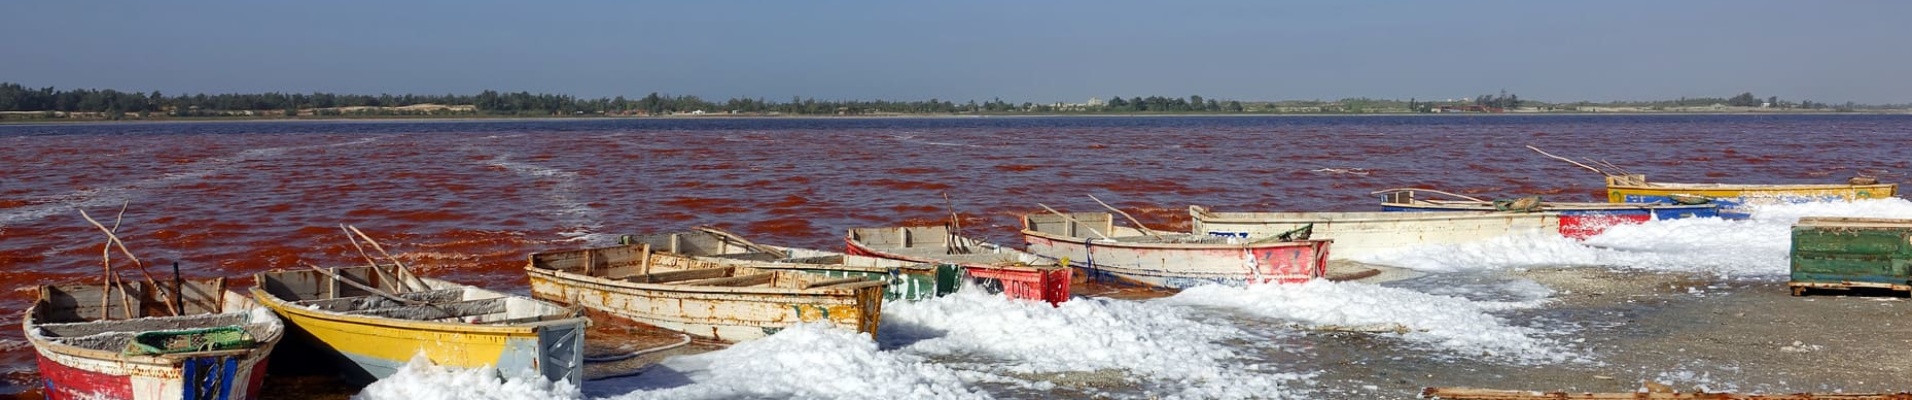 Pirogues en bord du lac rose au Sénégal